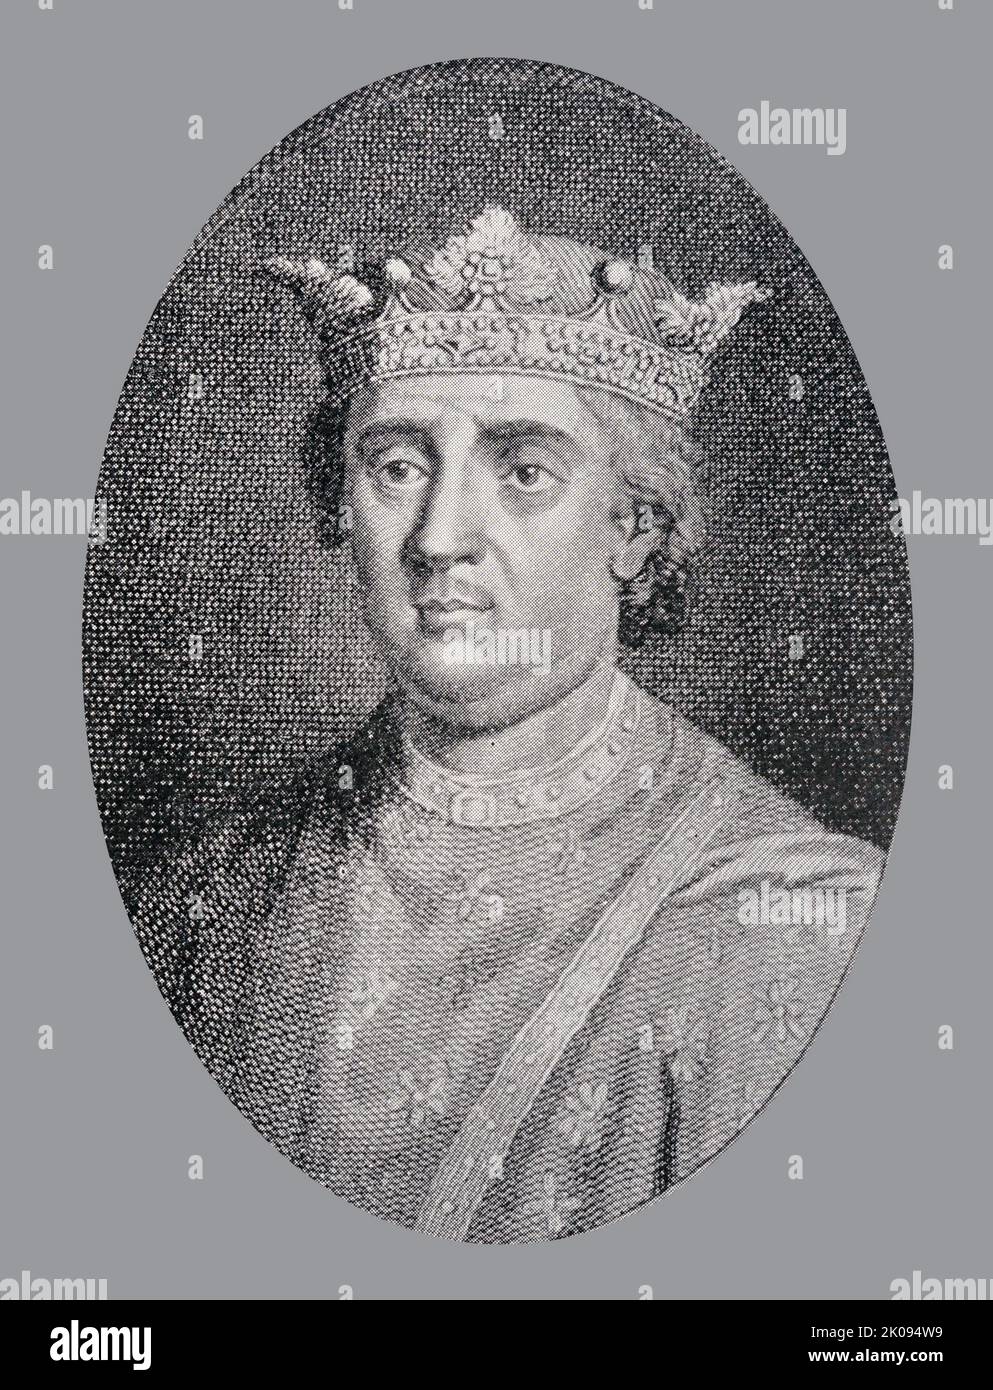 Henri le second, de sa tombe à Anjou. Henry II (5 mars 1133 - 6 juillet 1189), également connu sous le nom de Henry Curtmantle, Henry FitzEmpress ou Henry Plantagenet, fut roi d'Angleterre de 1154 jusqu'à sa mort en 1189. Banque D'Images